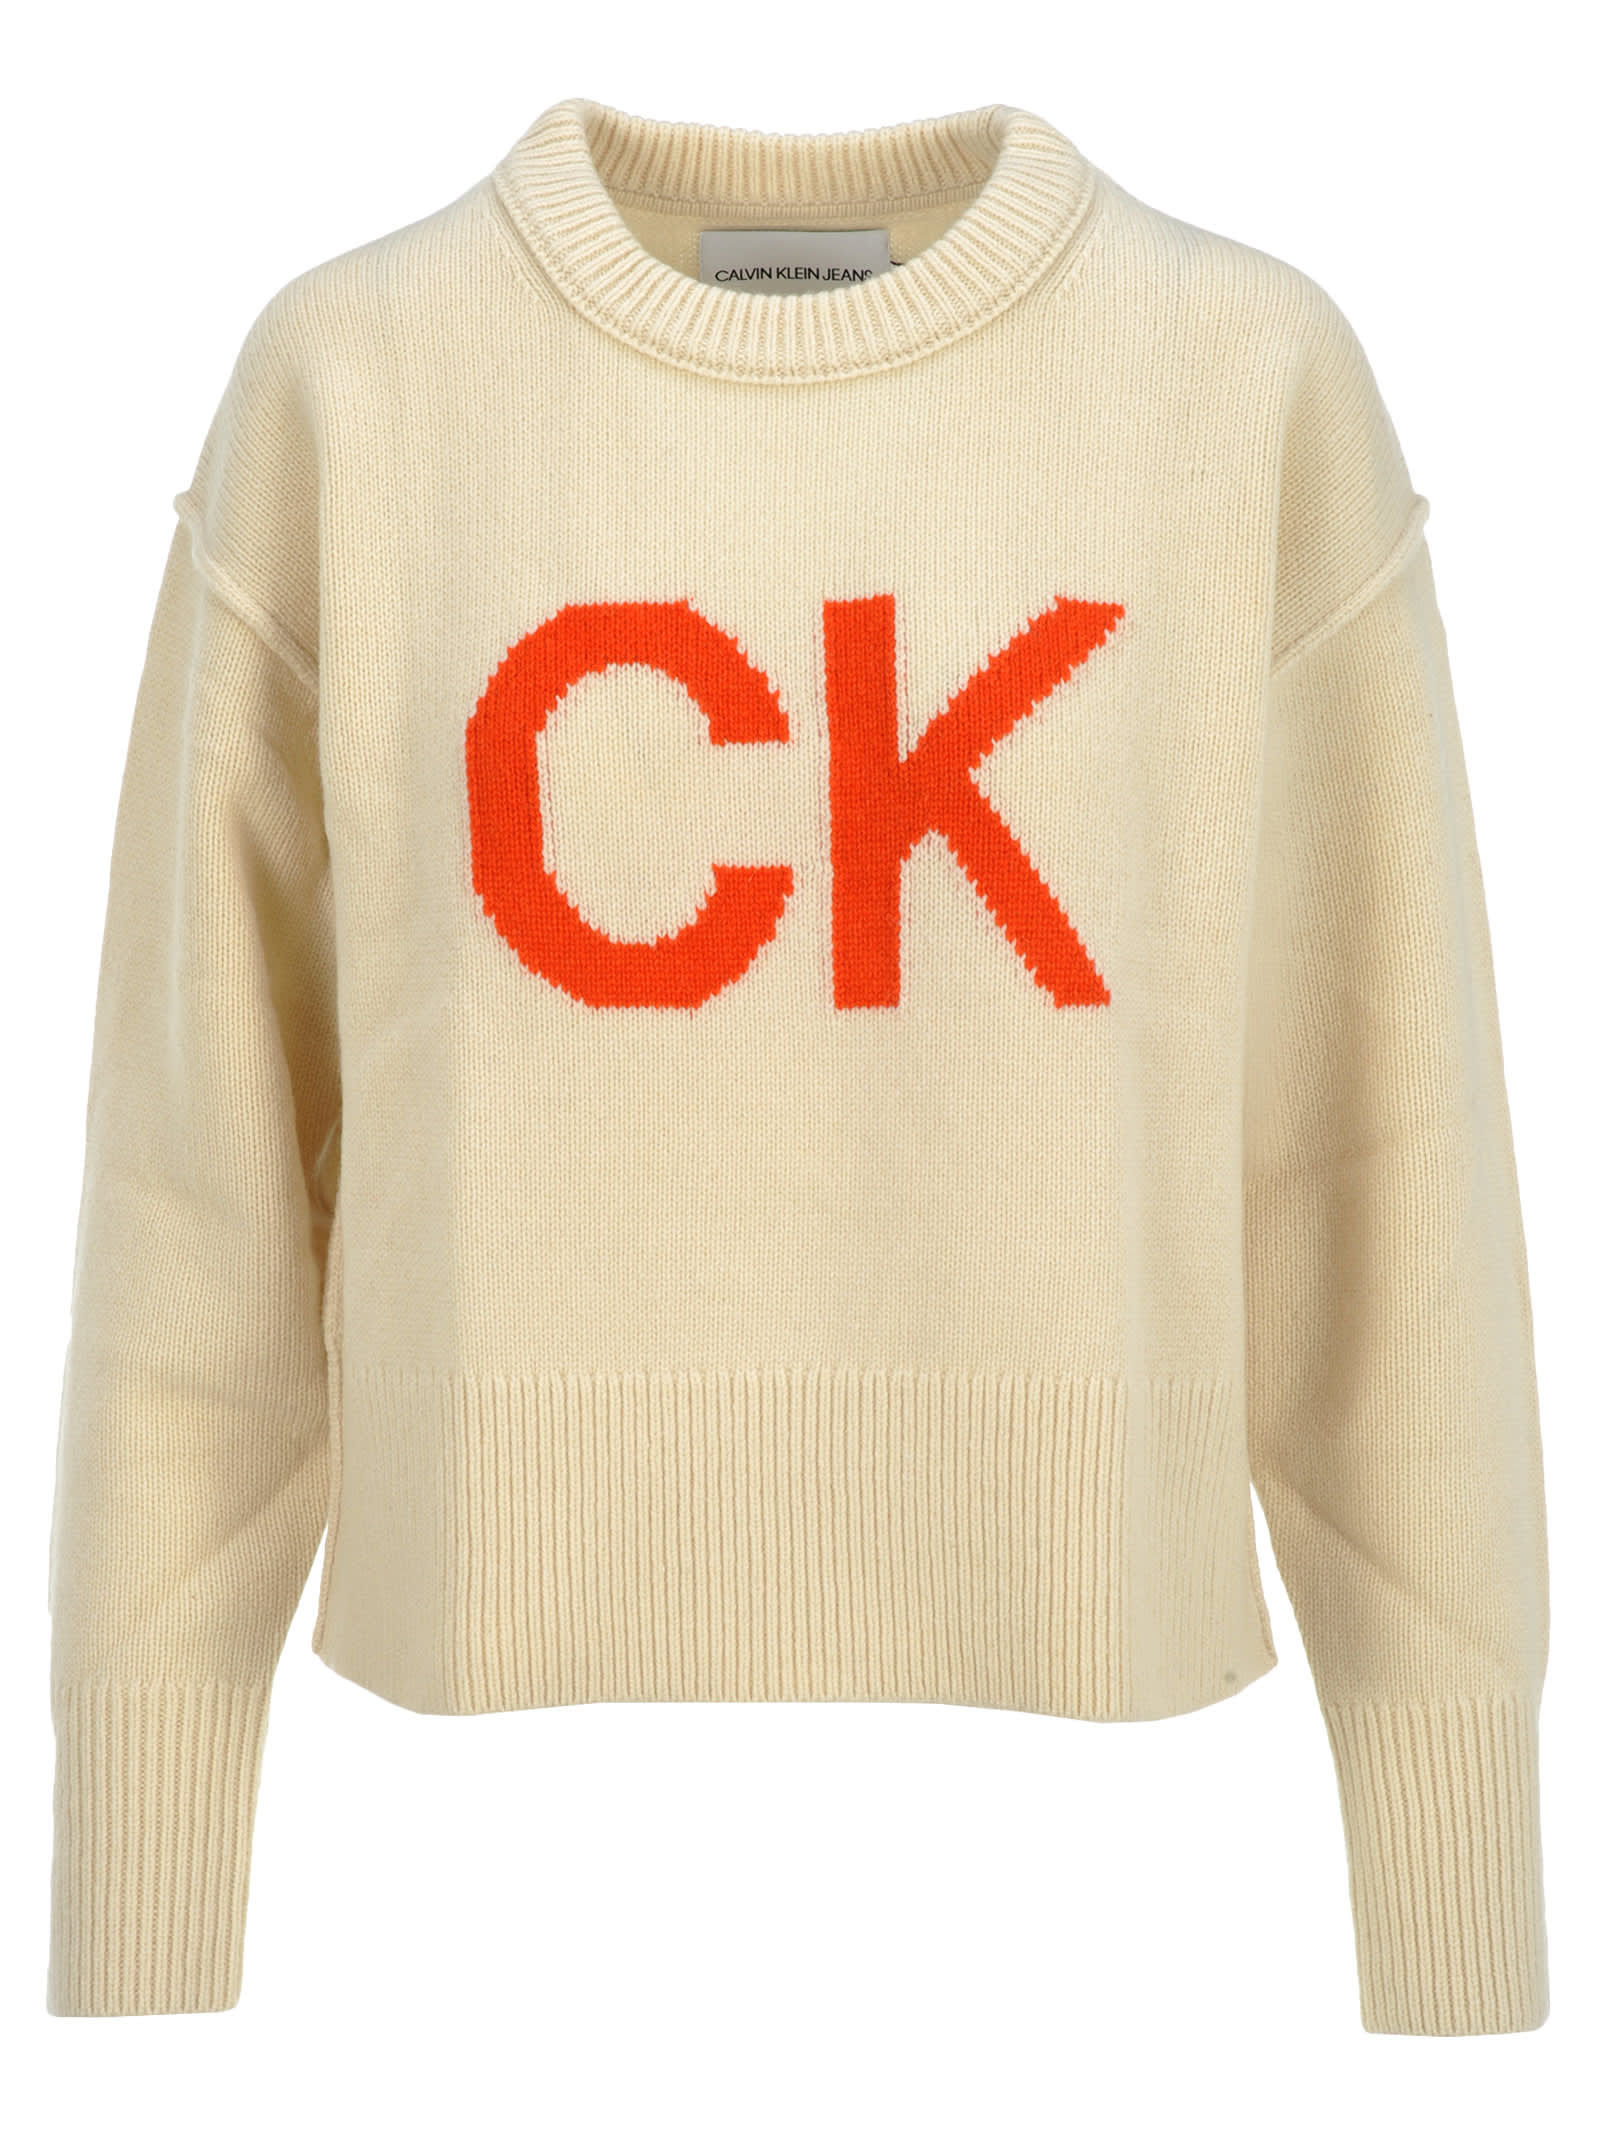 calvin klein orange sweater